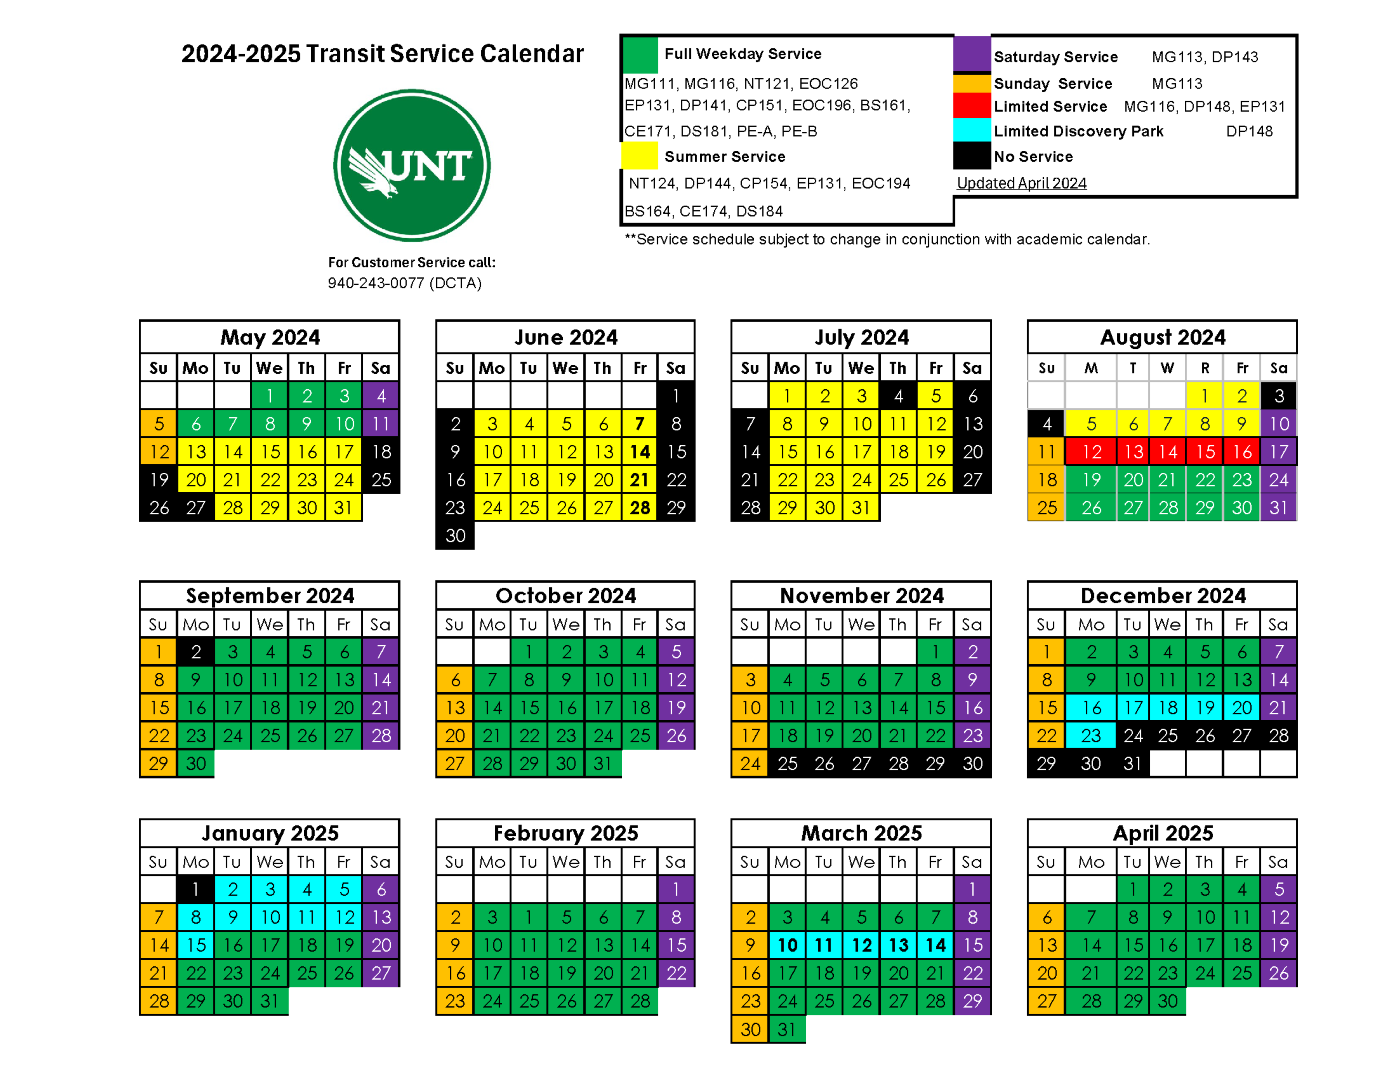 AY 24-25 Calendar